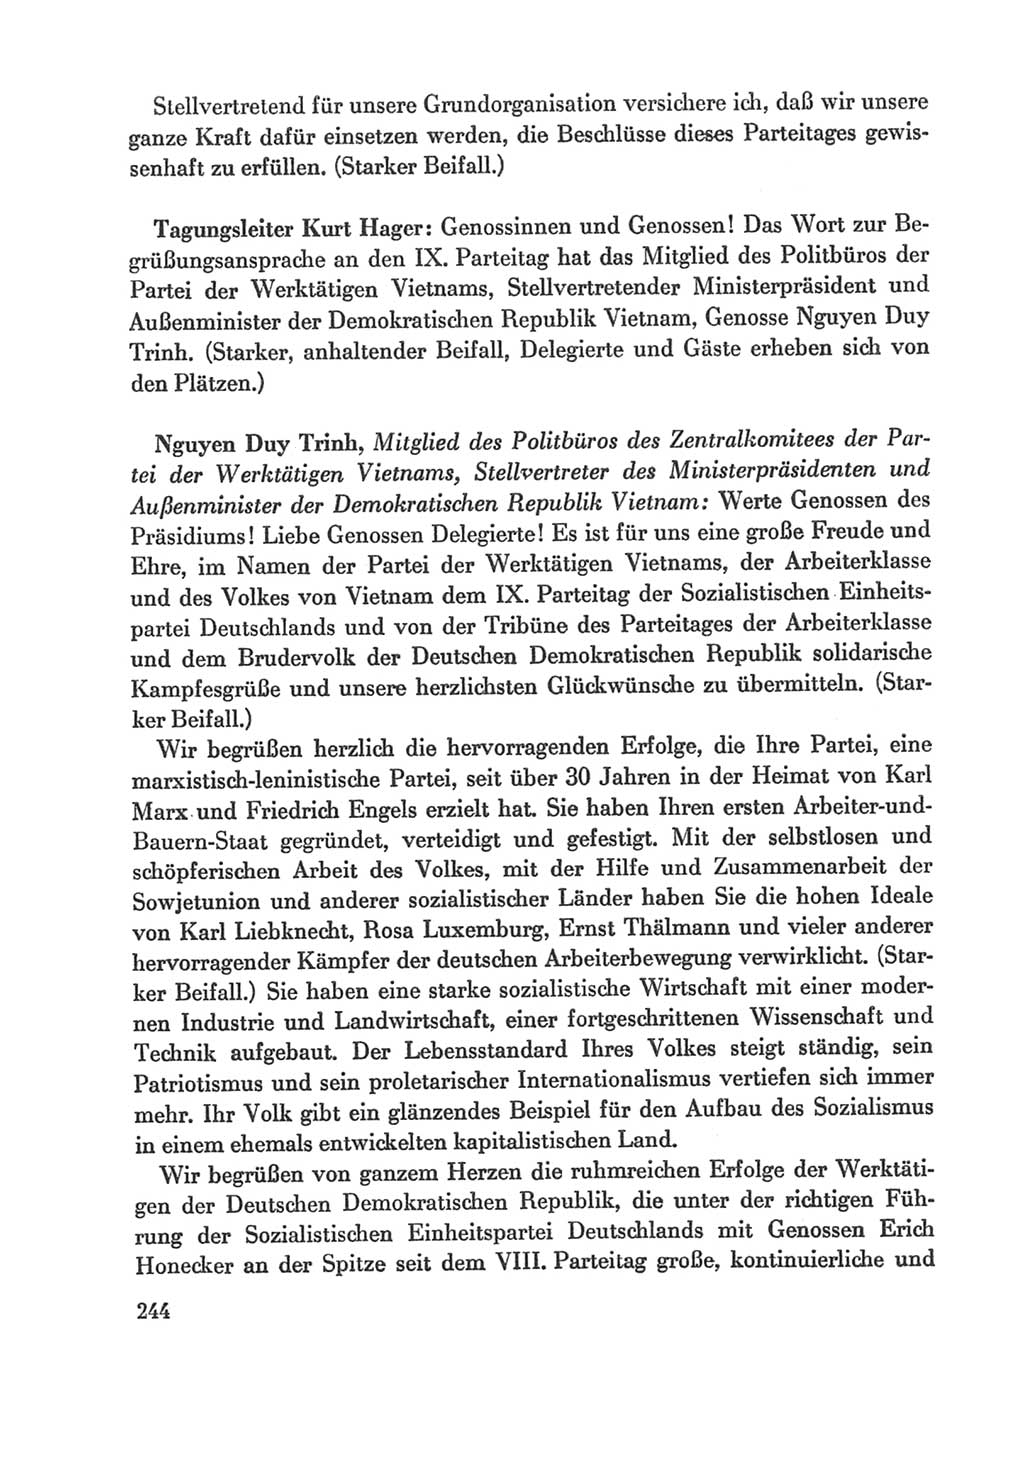 Protokoll der Verhandlungen des Ⅸ. Parteitages der Sozialistischen Einheitspartei Deutschlands (SED) [Deutsche Demokratische Republik (DDR)] 1976, Band 1, Seite 244 (Prot. Verh. Ⅸ. PT SED DDR 1976, Bd. 1, S. 244)